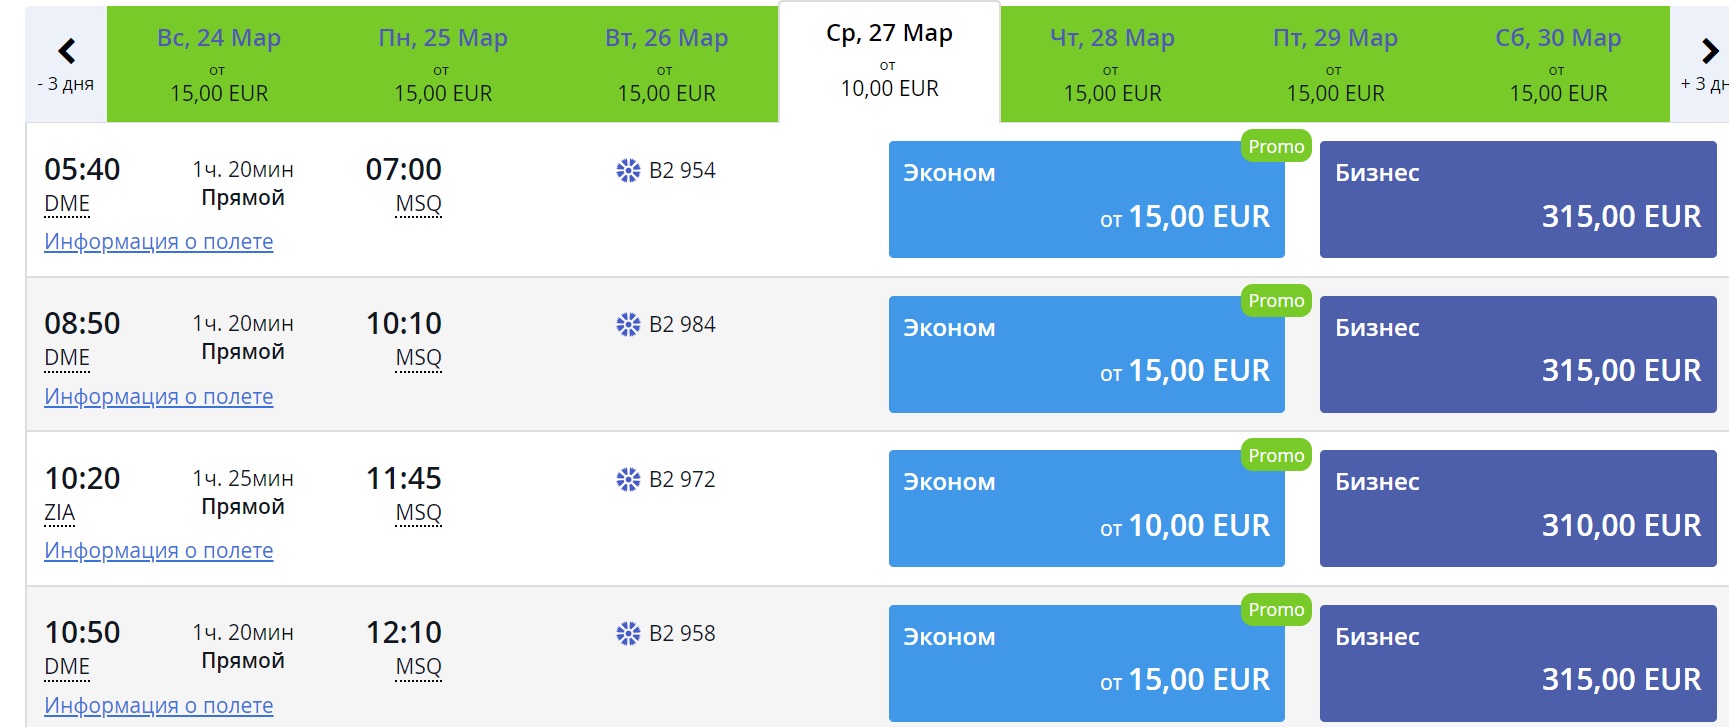 Авиабилеты спб минск прямой рейс белавиа цена авиабилета от иркутска до новосибирска